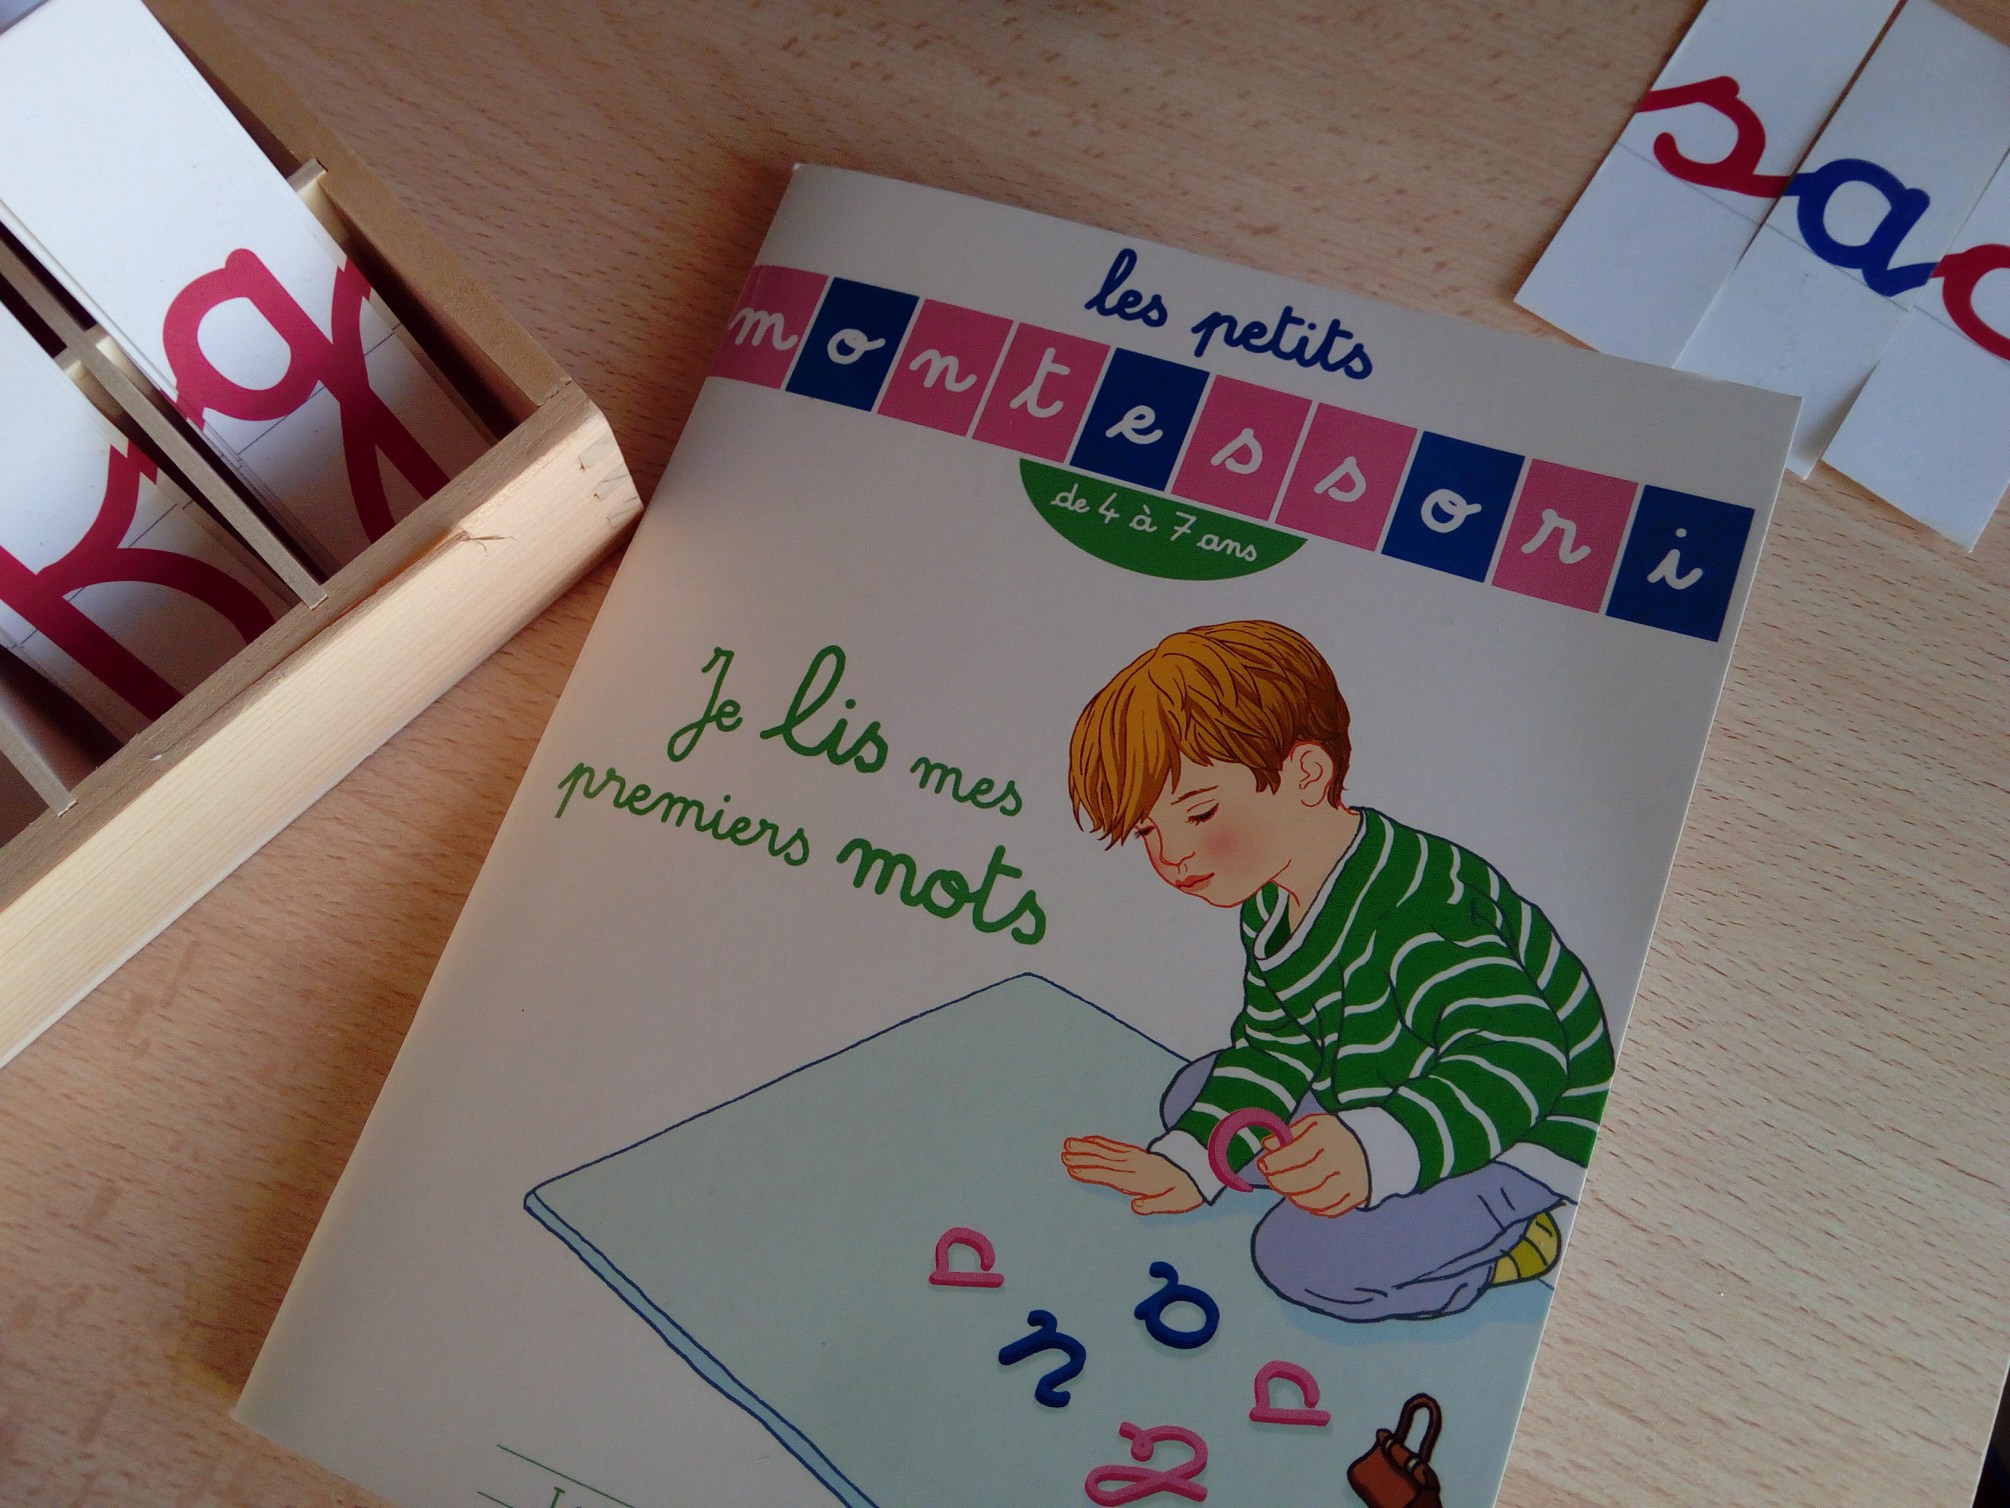 Les Petits Montessori - Je lis mes premiers mots